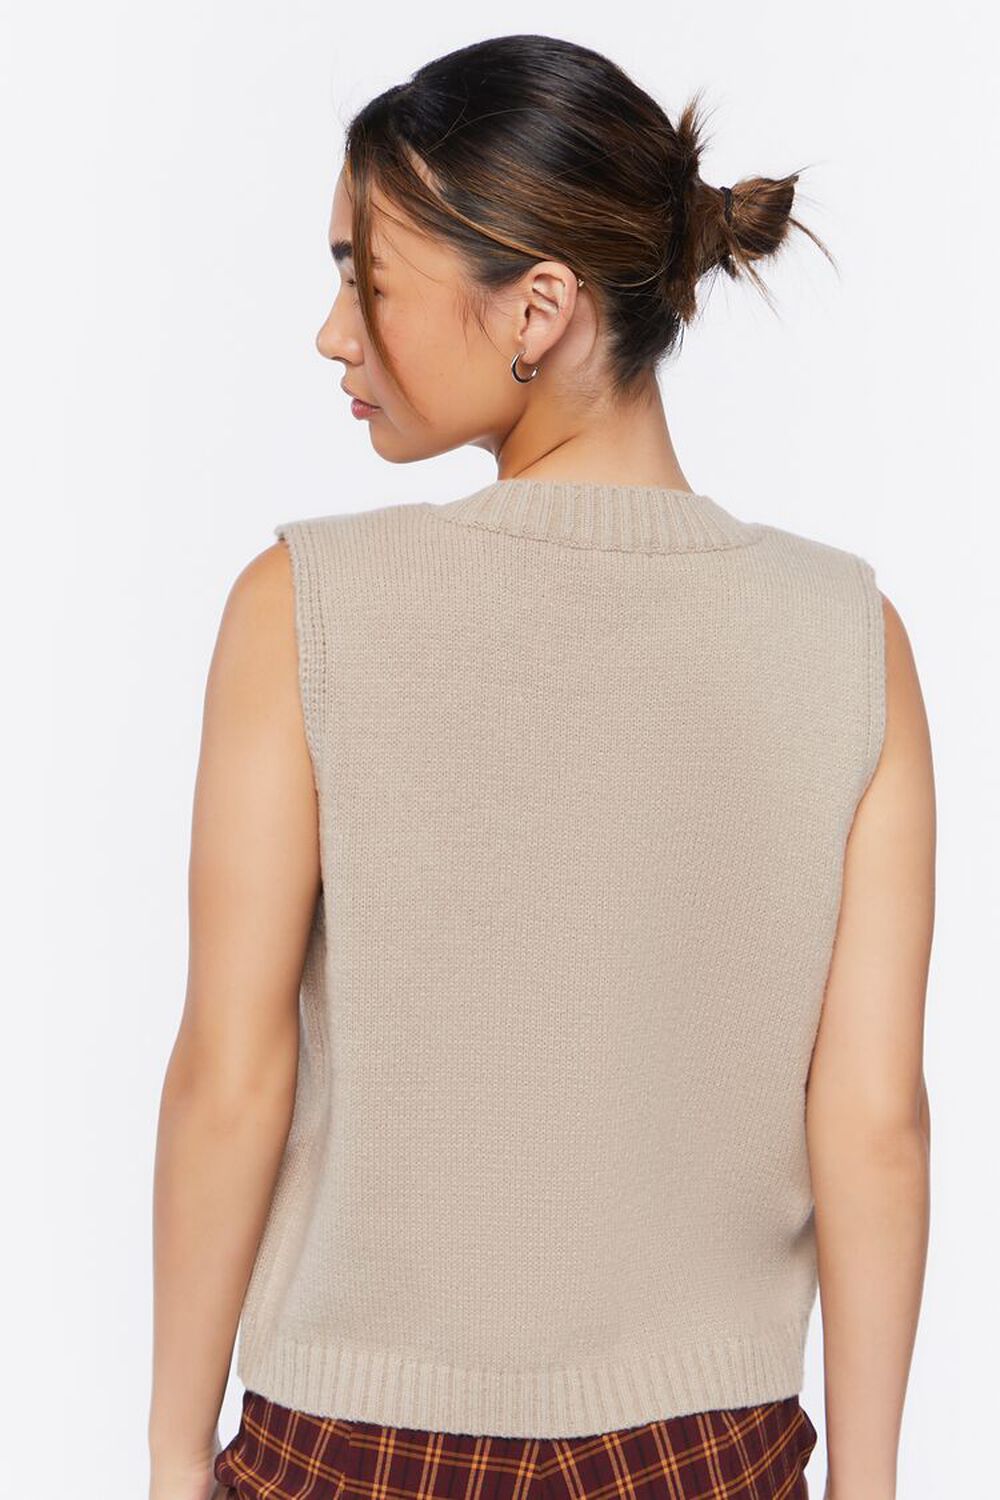 KHAKI Pocket Sweater Vest, image 3